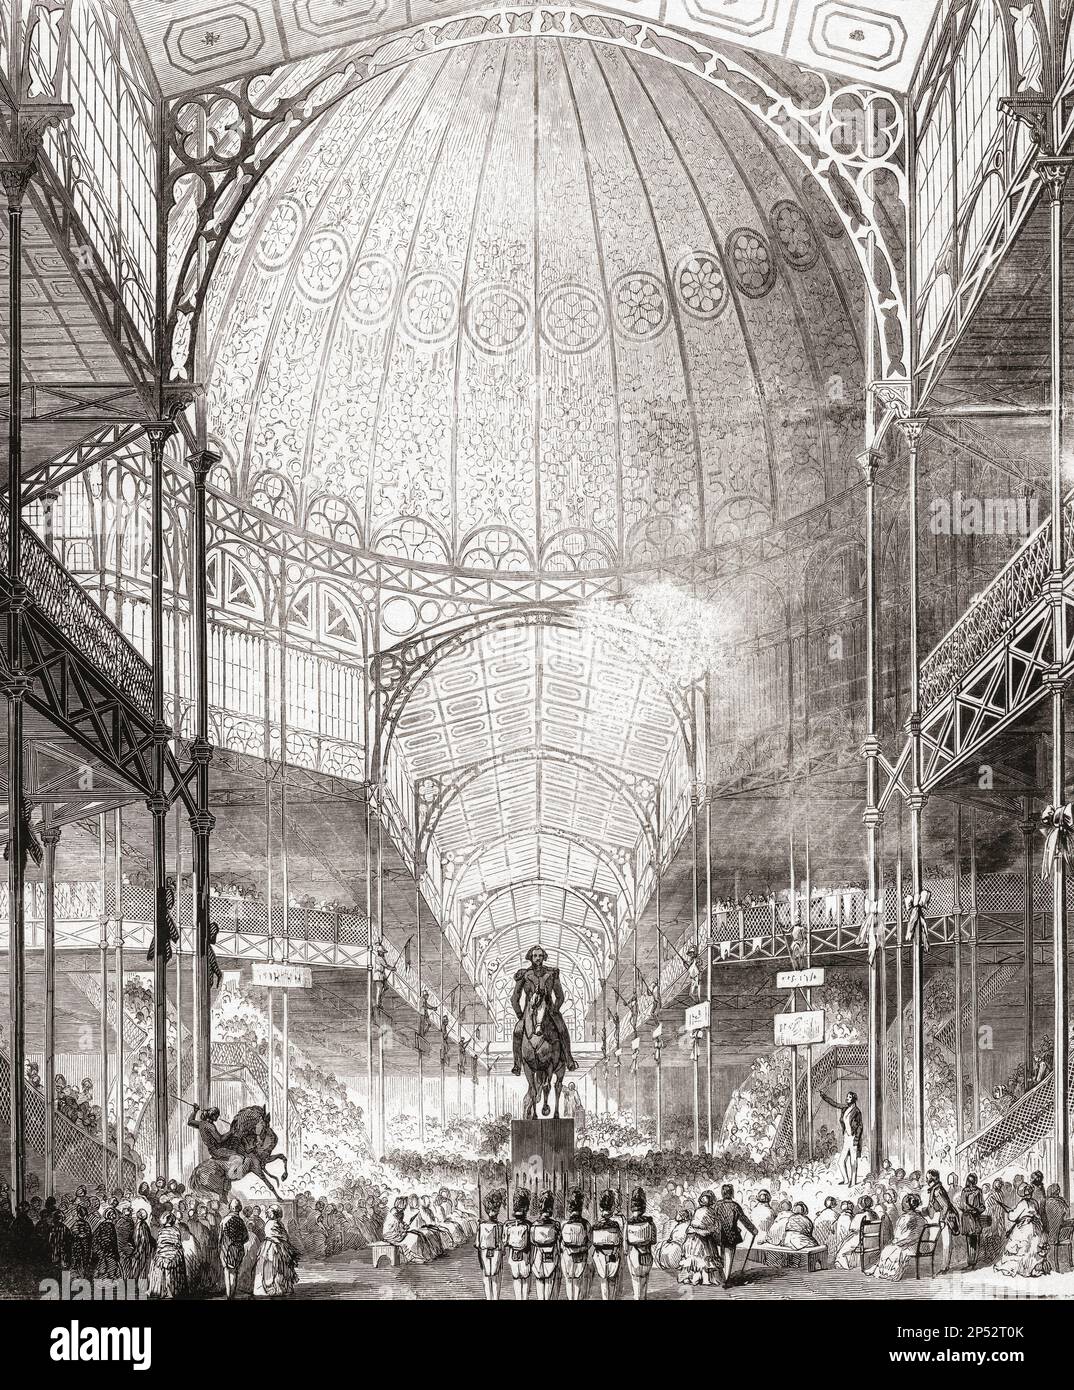 Das Innere des Crystal Palace, London, England. Der Crystal Palace wurde für die große Ausstellung von 1851 erbaut. Von einem zeitgenössischen Werk. Stockfoto